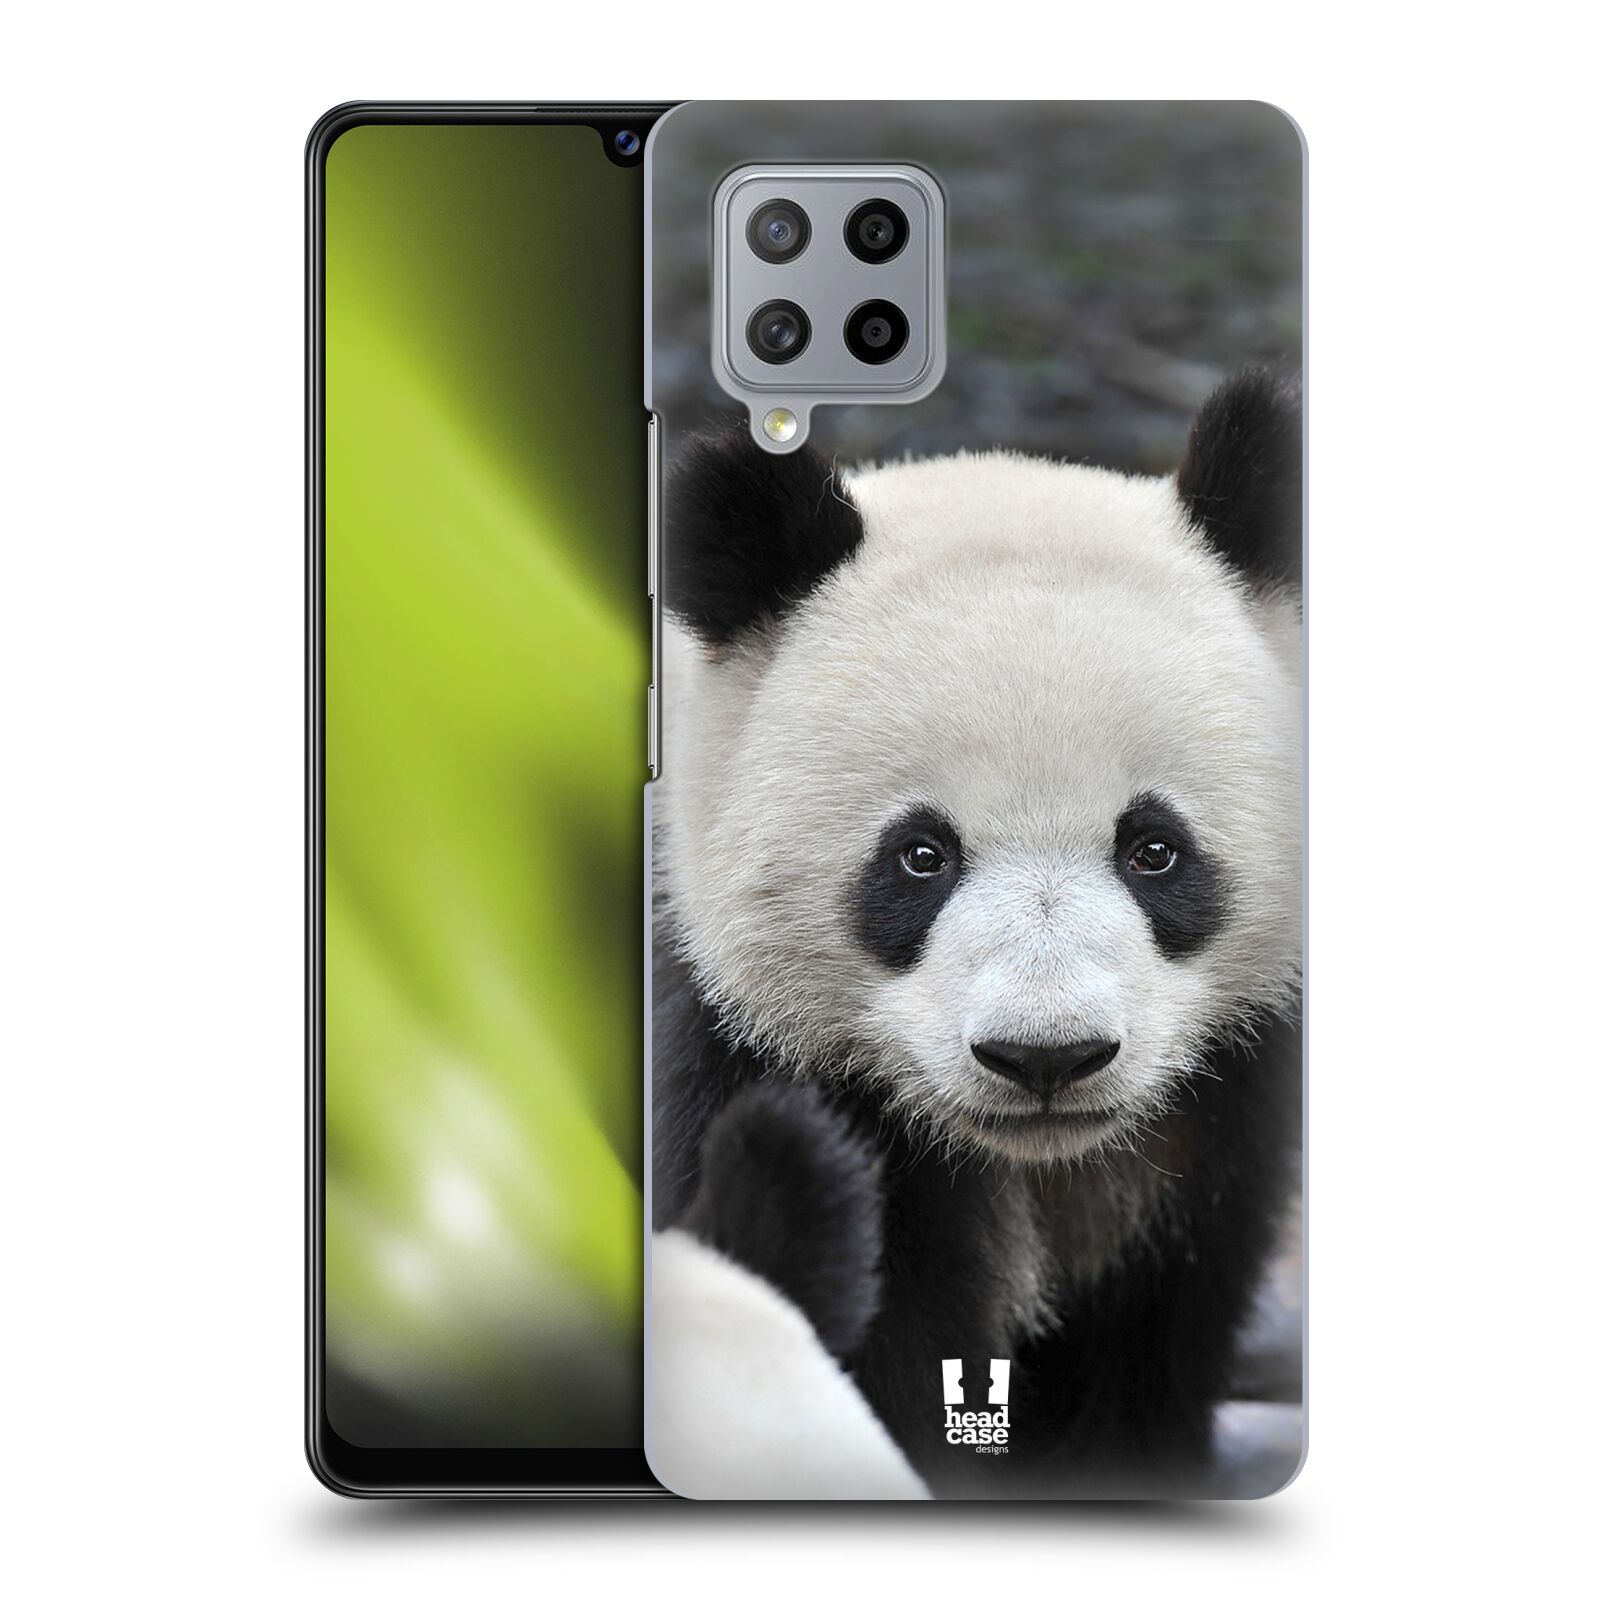 Zadní obal pro mobil Samsung Galaxy A42 5G - HEAD CASE - Svět zvířat medvěd panda